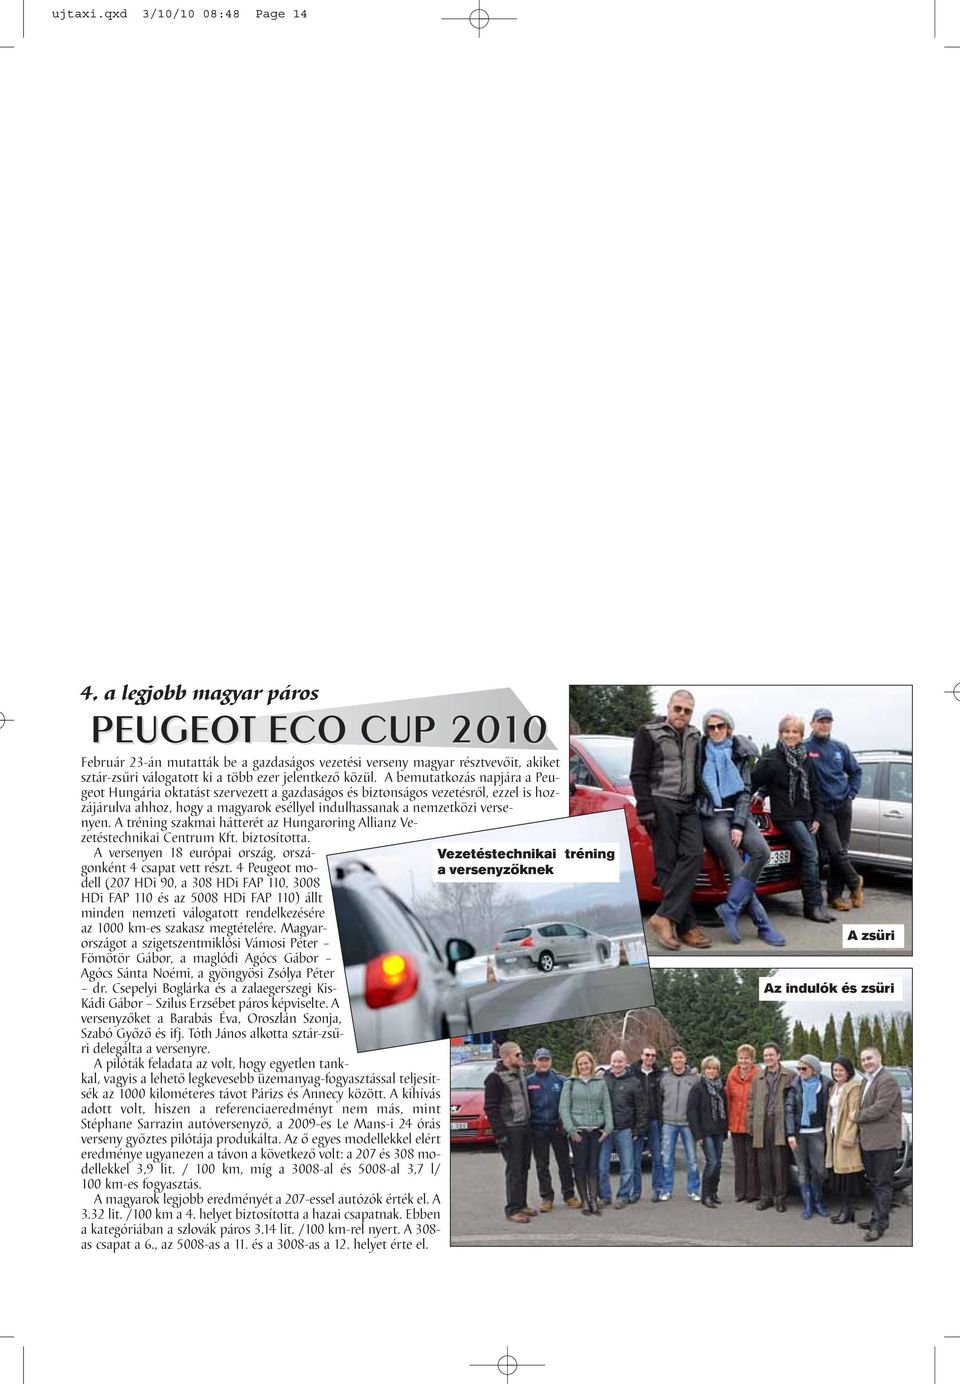 A bemutatkozás napjára a Peugeot Hungária oktatást szervezett a gazdaságos és biztonságos vezetésről, ezzel is hozzájárulva ahhoz, hogy a magyarok eséllyel indulhassanak a nemzetközi versenyen.